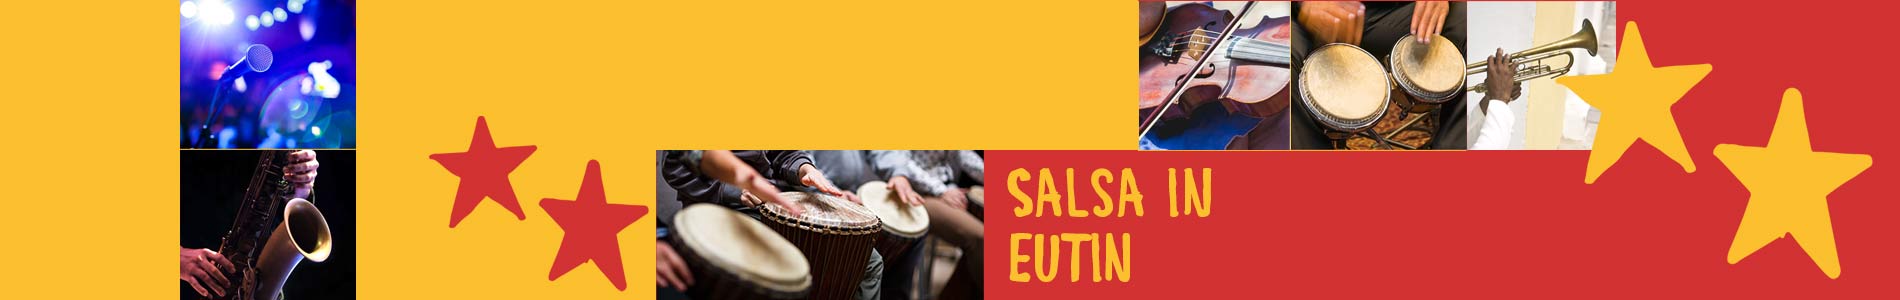 Salsa in Eutin – Salsa lernen und tanzen, Tanzkurse, Partys, Veranstaltungen